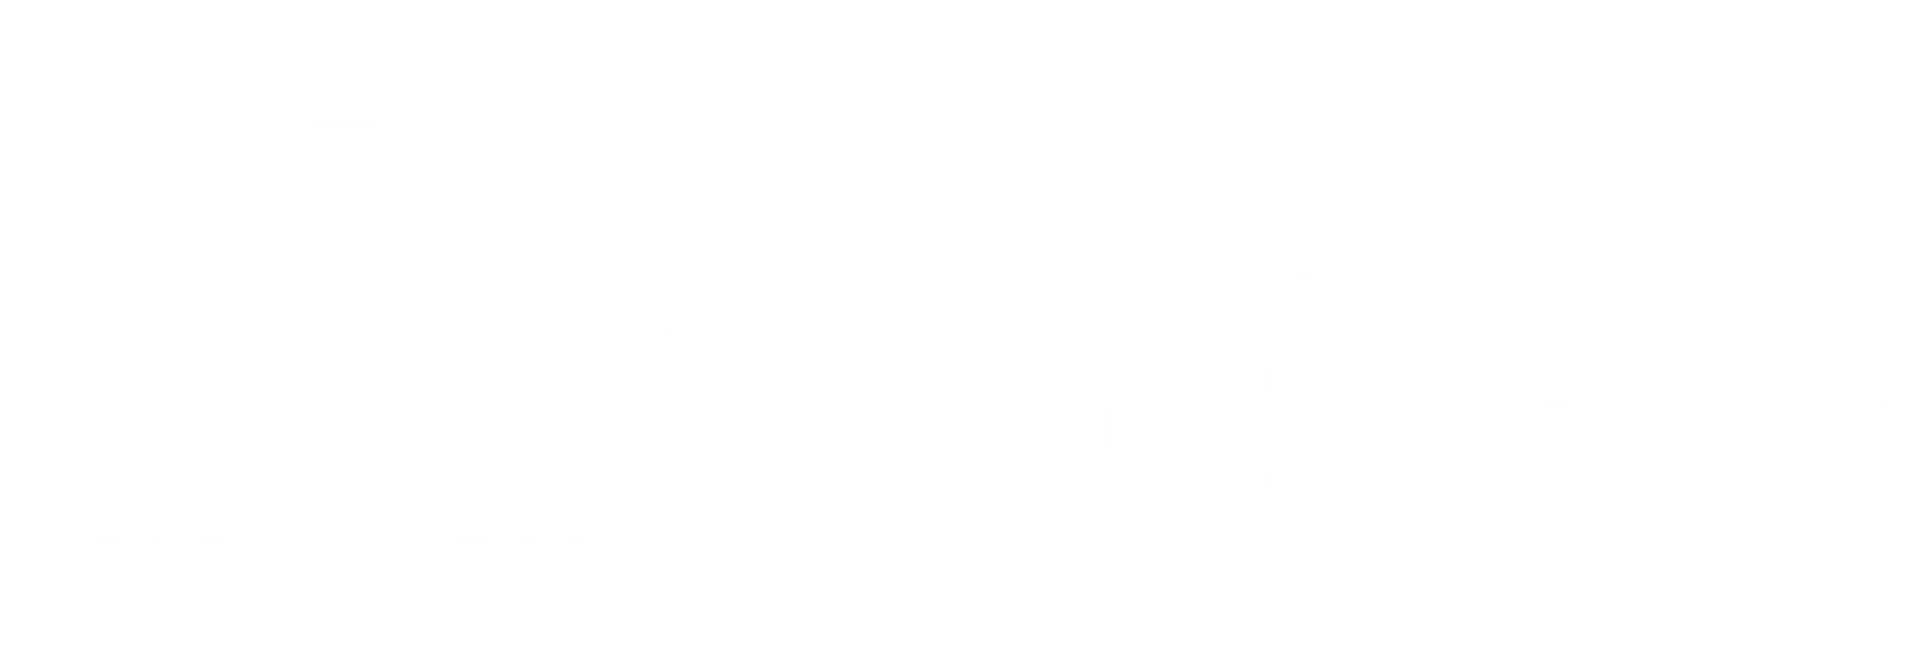 Fences by Legge & Sons - logo